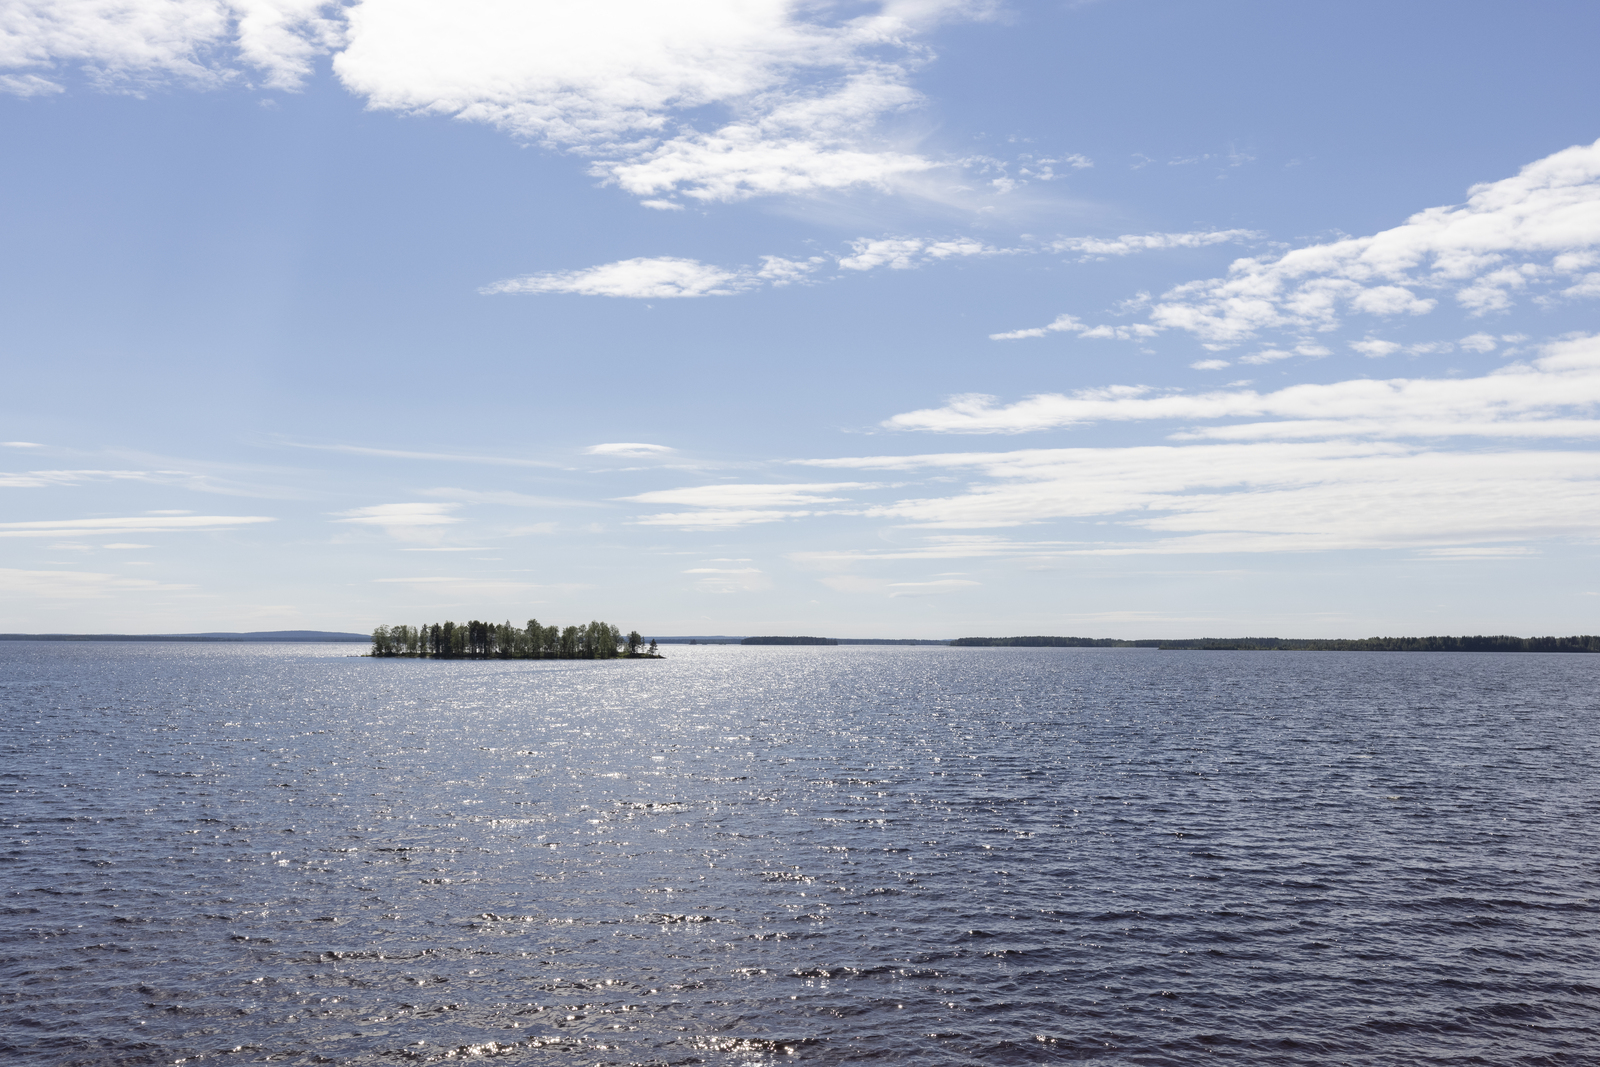 Kesäisessä järvimaisemassa vesi kimmeltää auringonvalossa. Järvenselällä on saari.